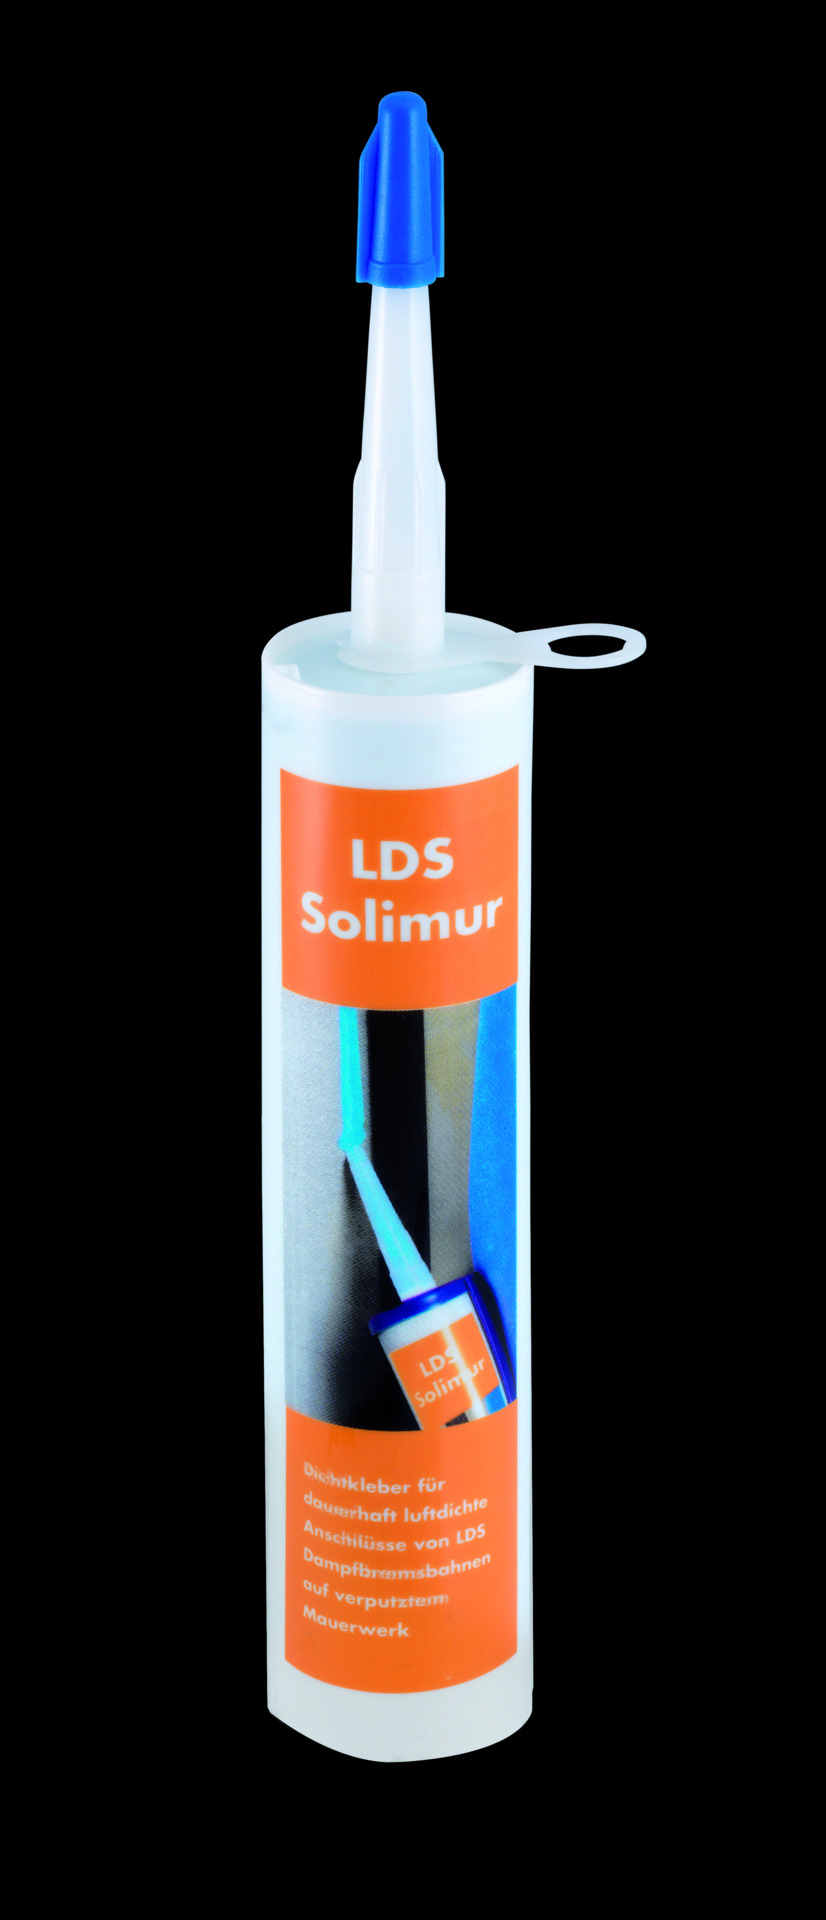 Knauf Insulation LDS Solifix (Solimur)